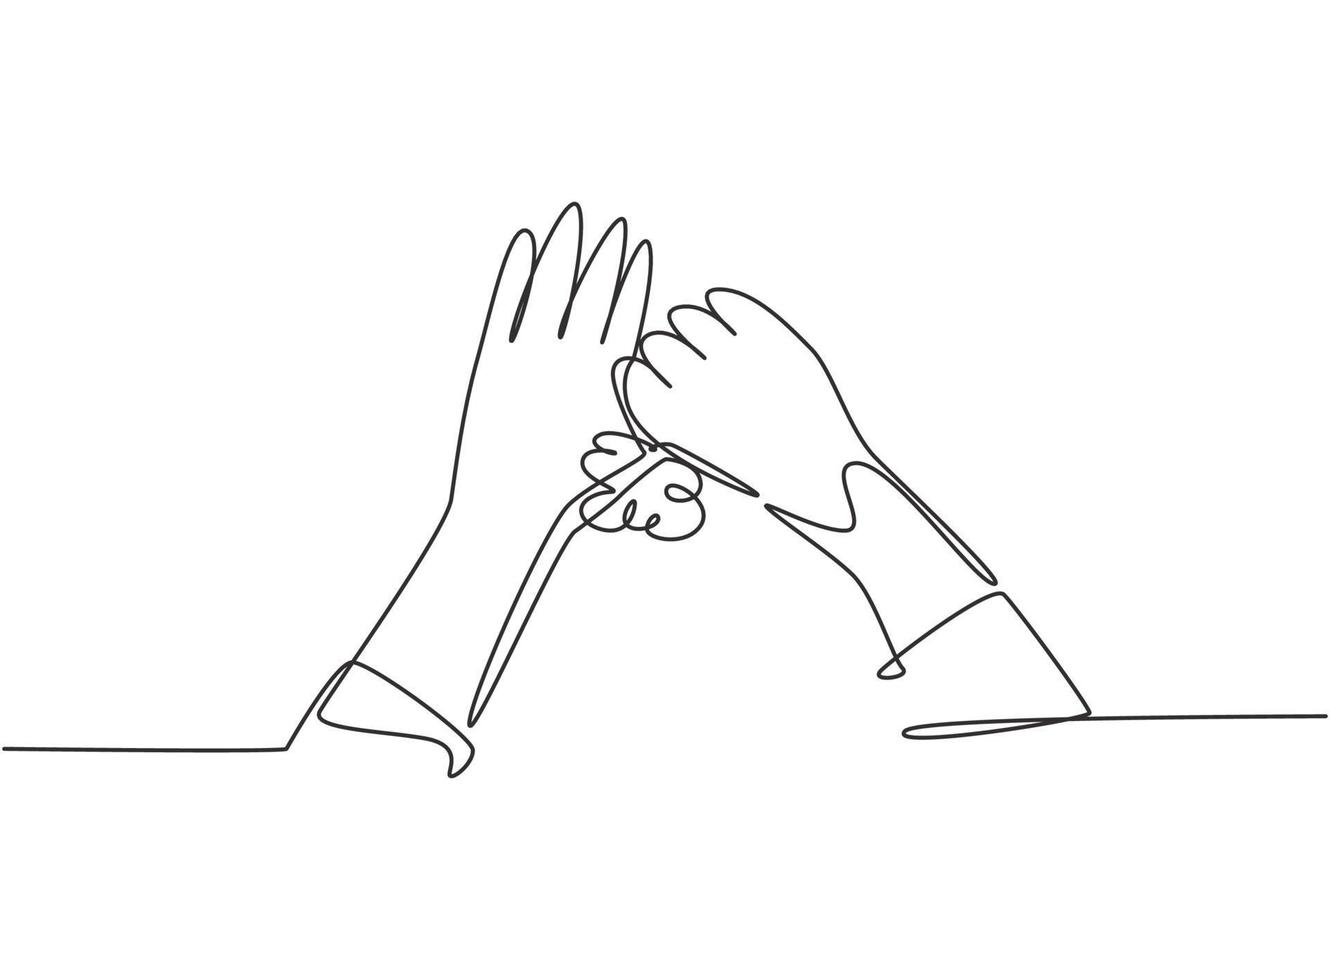 dibujo de línea continua única doce pasos lavarse las manos frotando los pulgares con agua y jabón hasta que estén limpios. los dedos se vuelven limpios e higiénicos. Ilustración de vector de diseño gráfico de dibujo de una línea